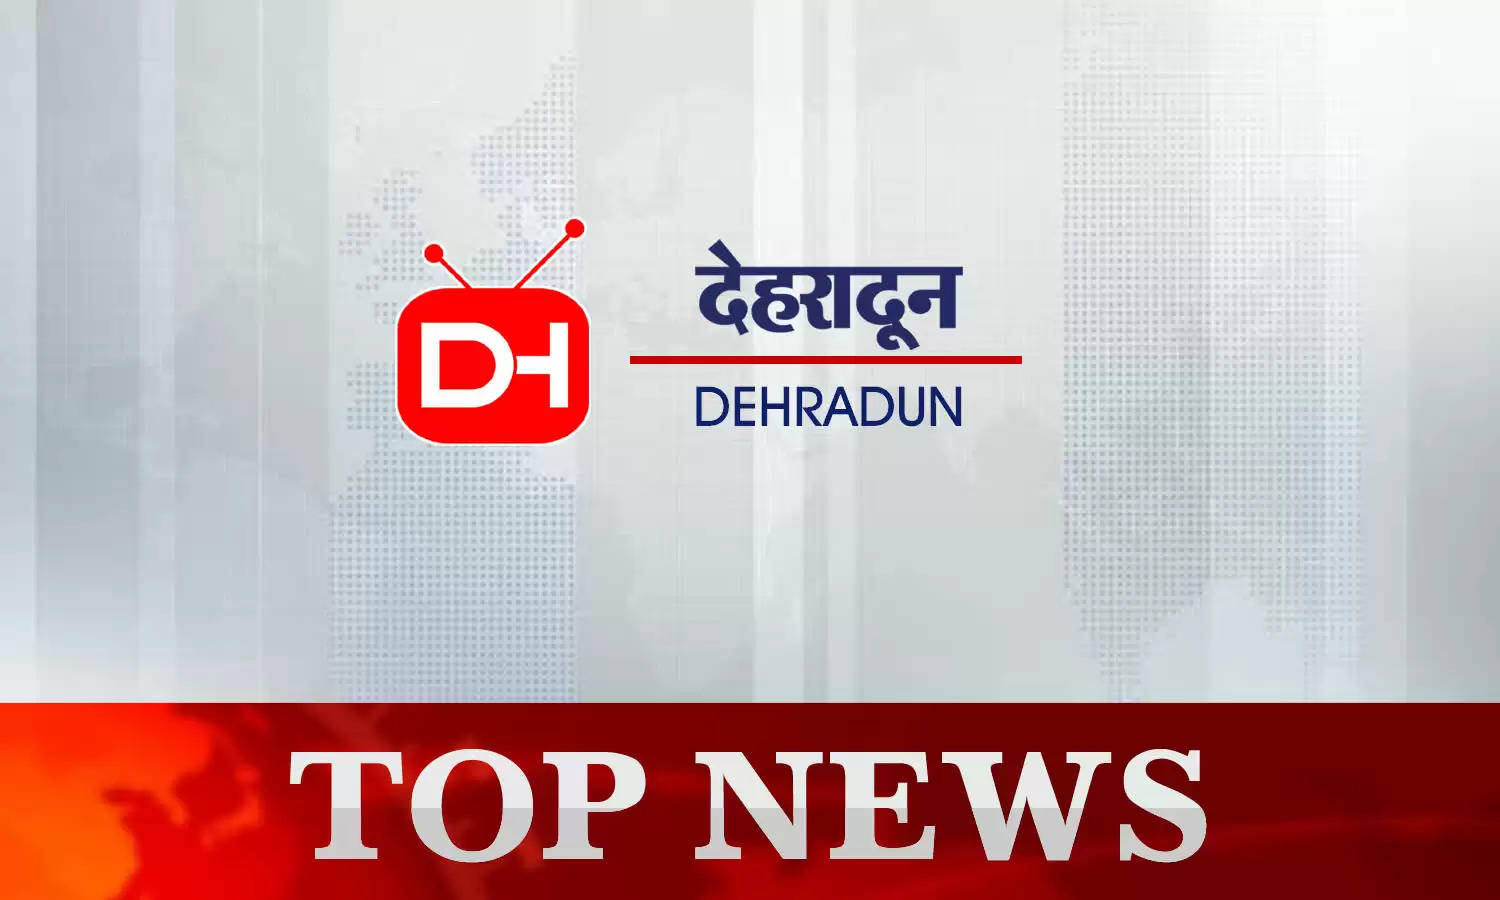 Dehradun News Today 18th October 2022 : देहरादून की दिनभर की छोटी-बड़ी खबरें